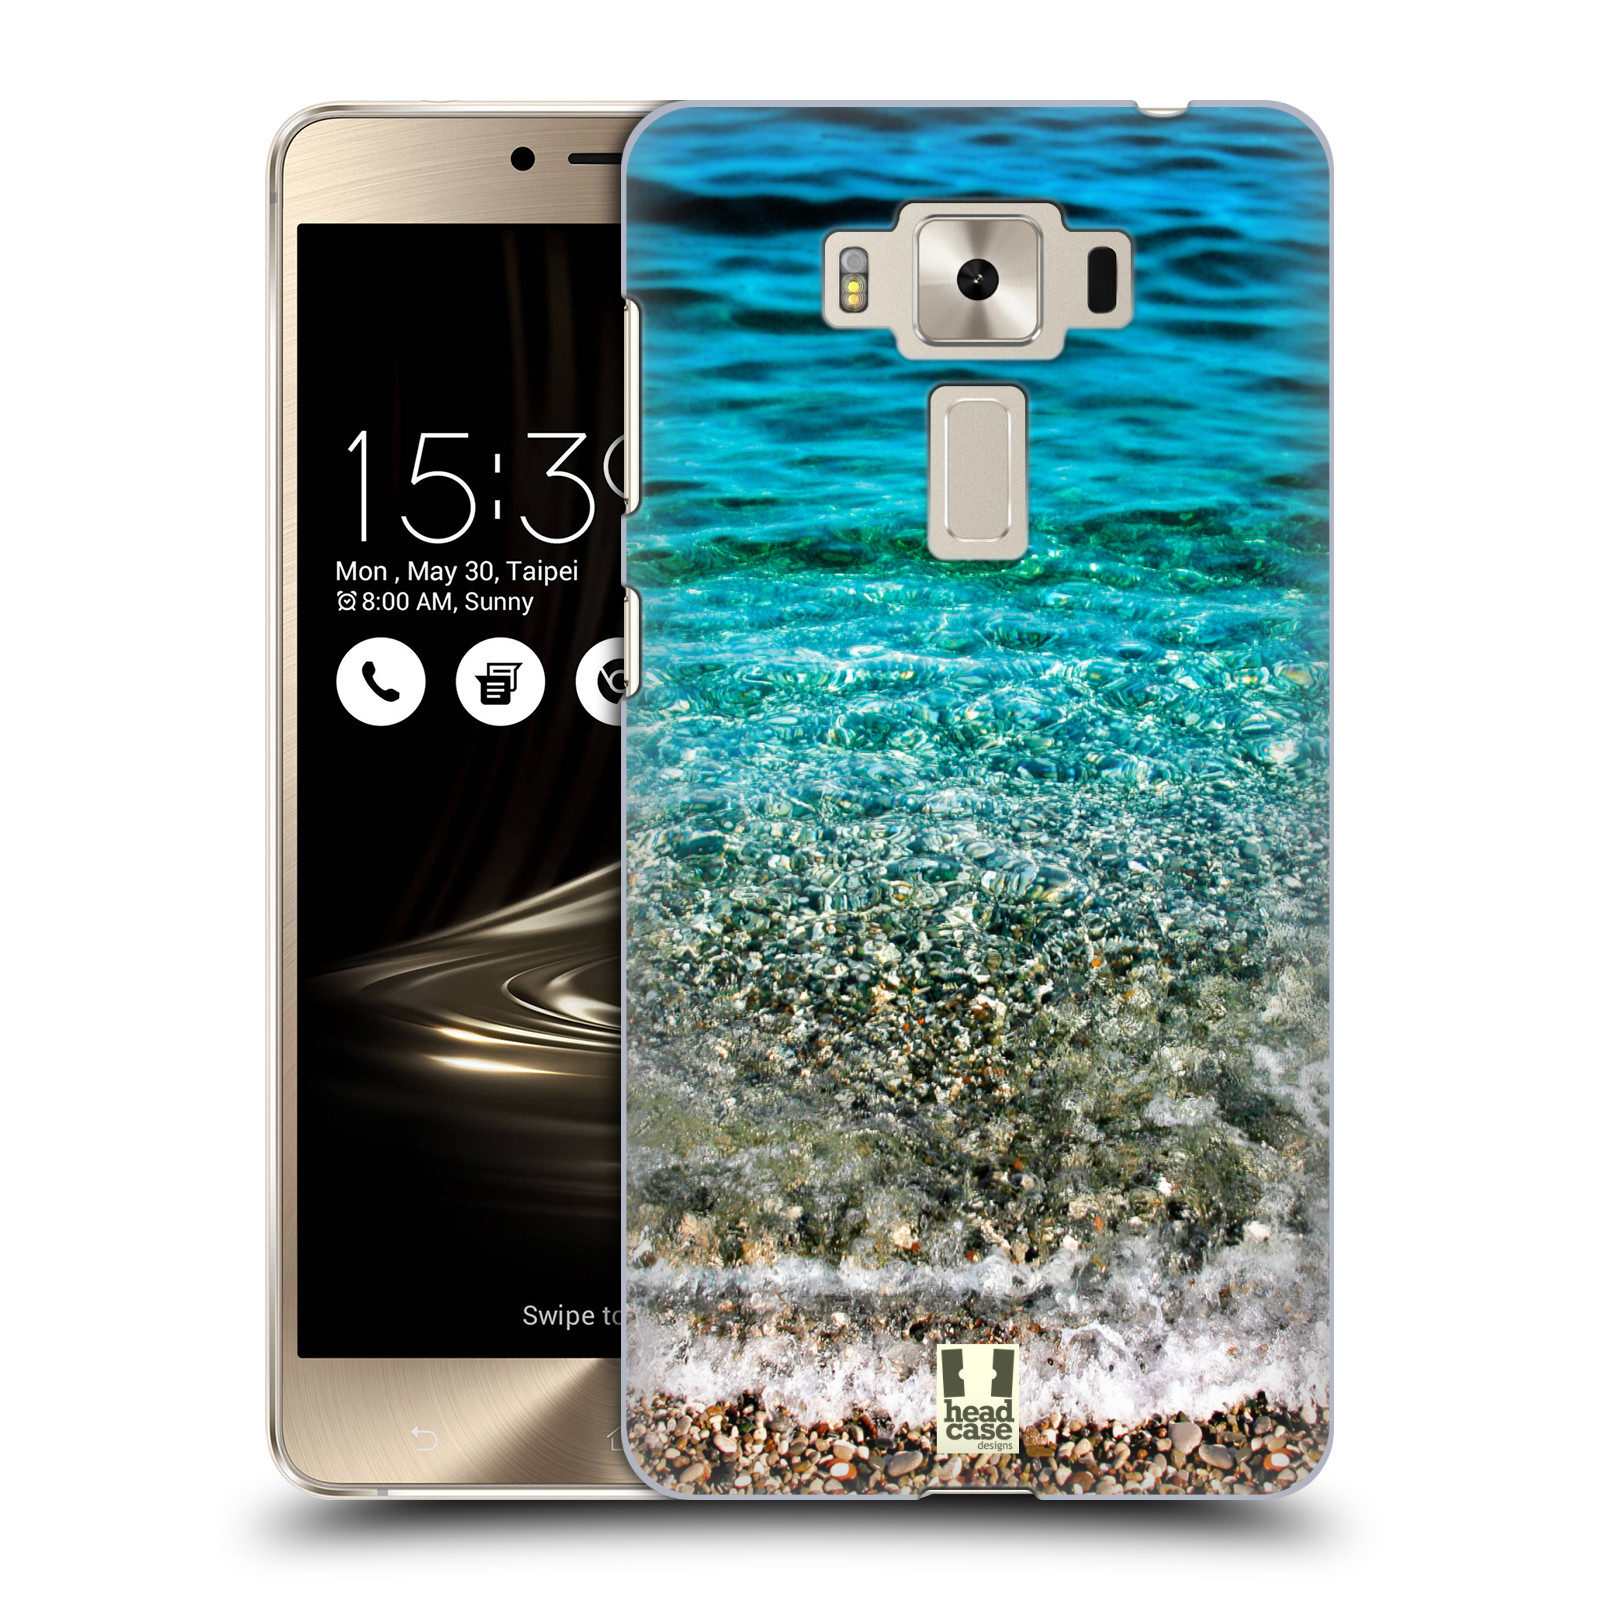 HEAD CASE plastový obal na mobil Asus Zenfone 3 DELUXE ZS550KL vzor Pláže a Moře PRŮZRAČNÉ MOŘE S OBLÁZKY